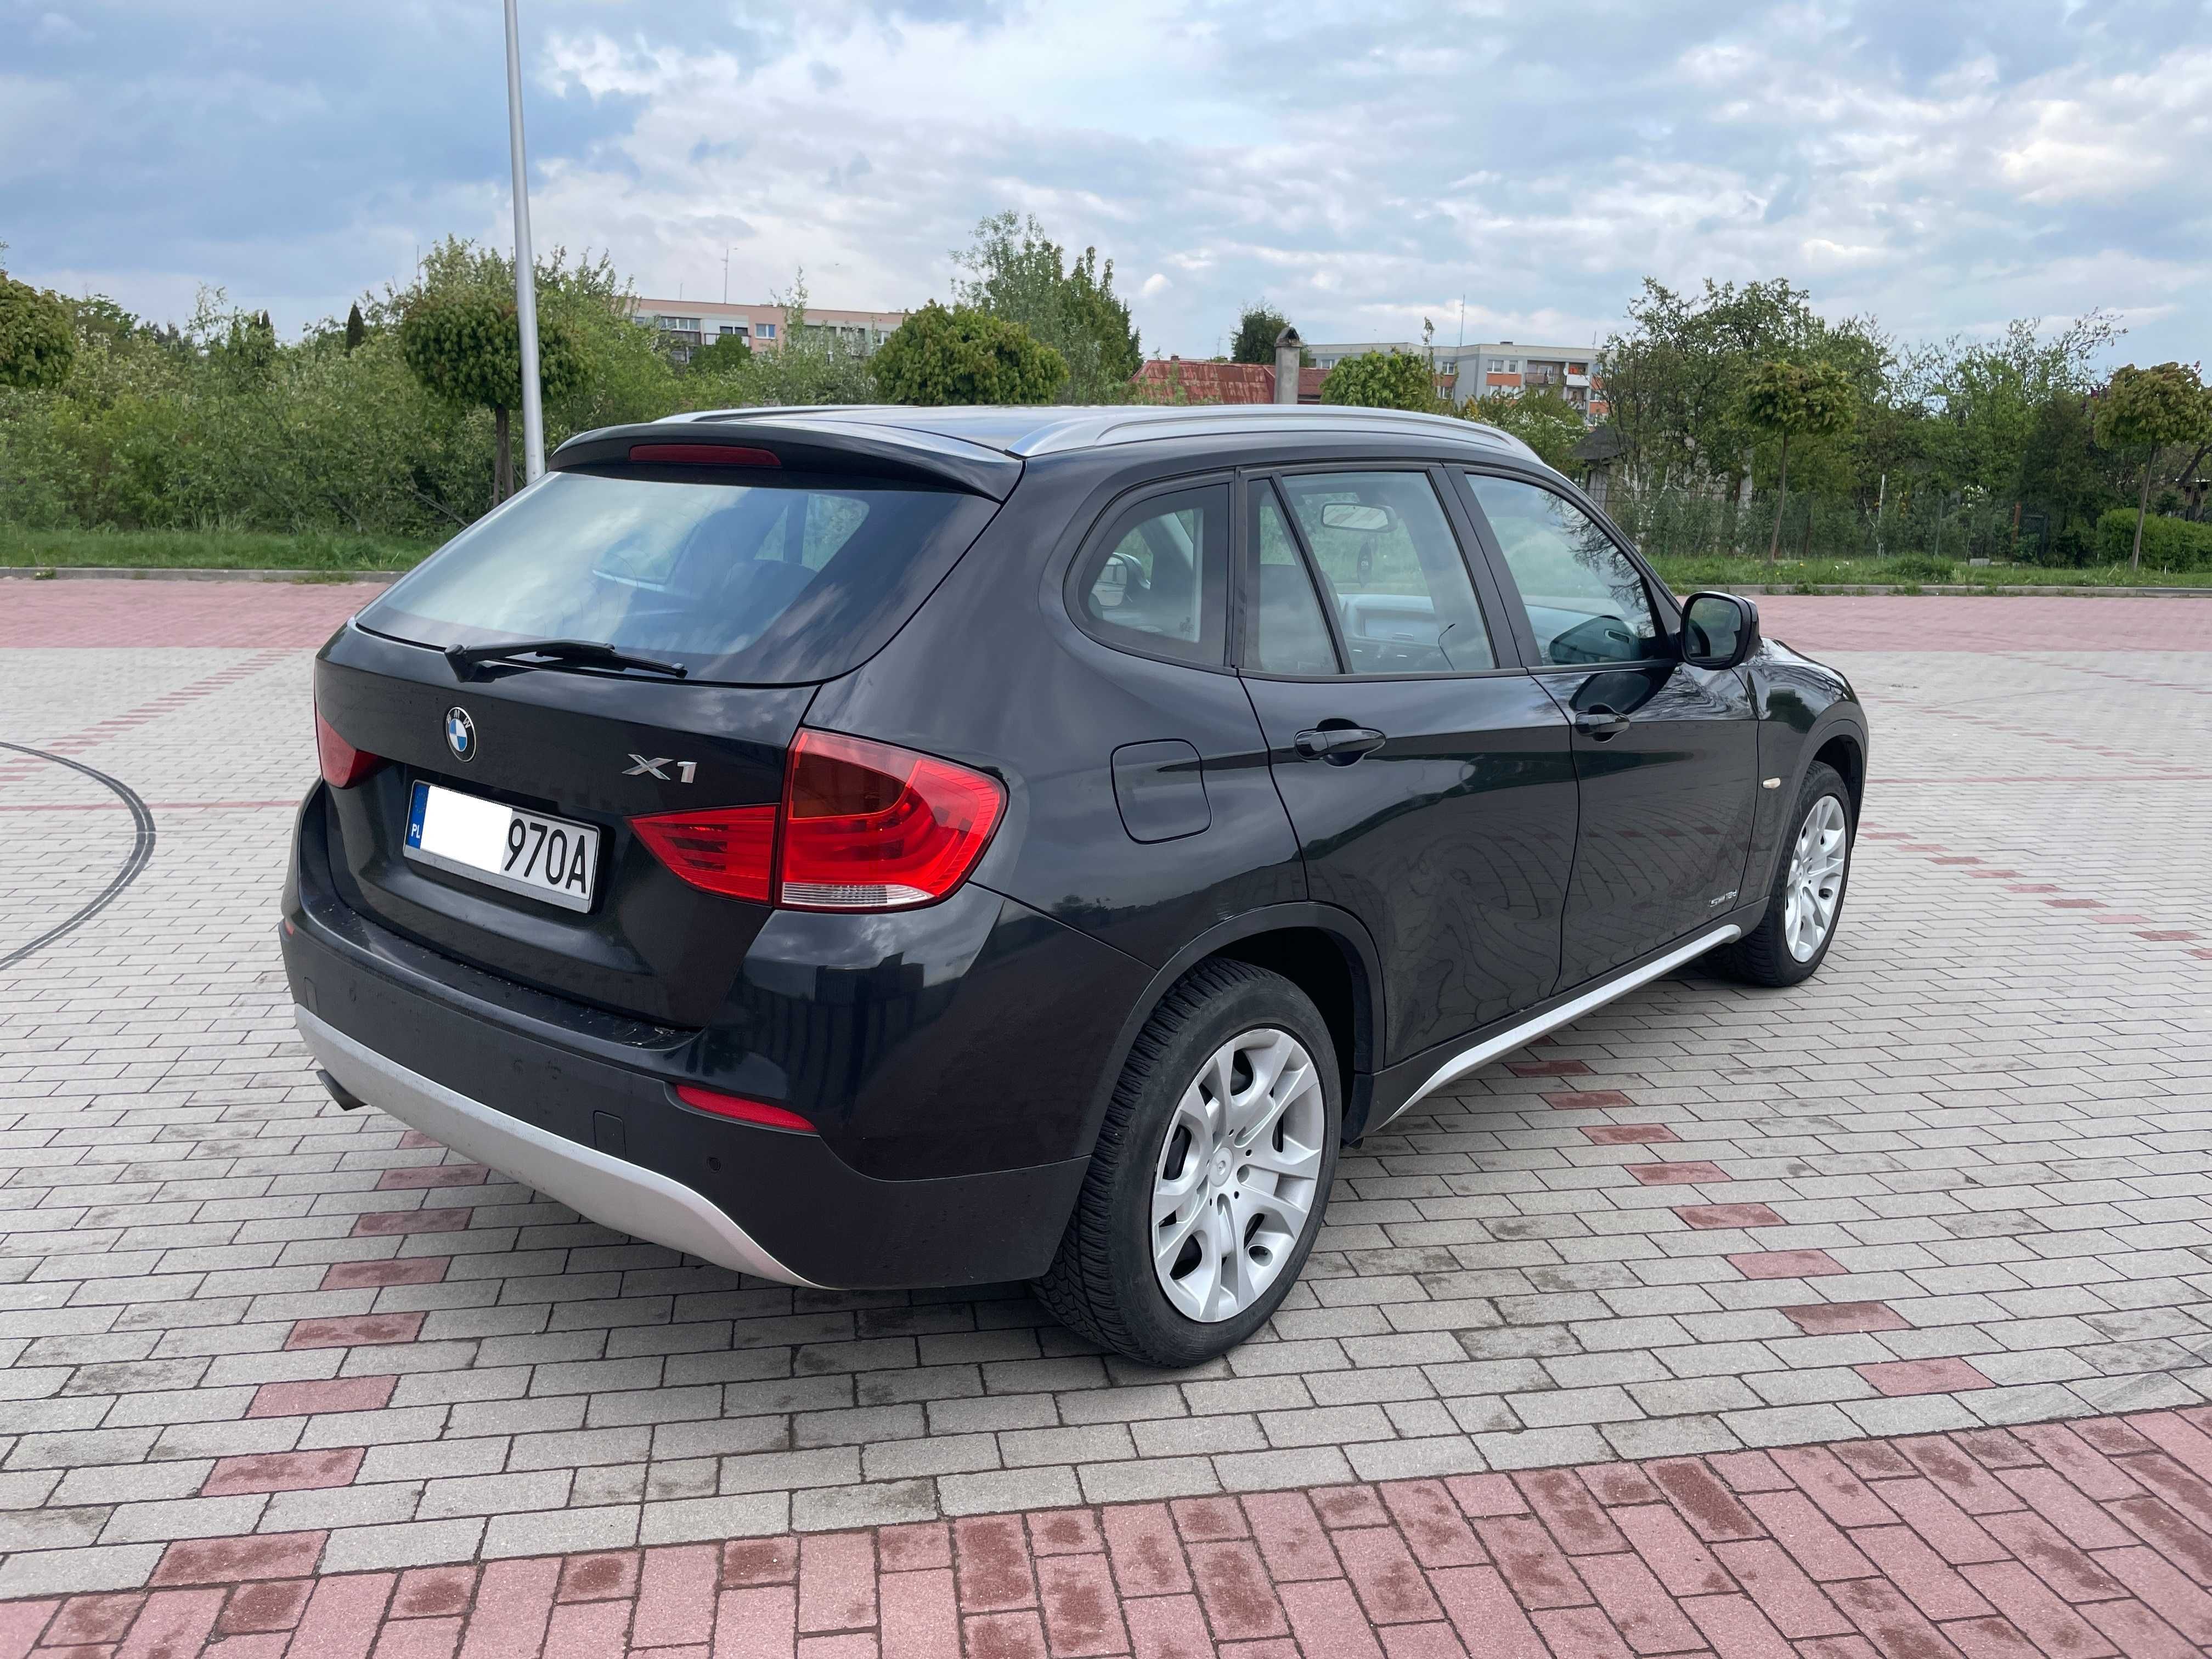 BMW X1 2.0 diesel S-DRIVE rok 2011 zarejestrowana skóra okazja bezwyp.